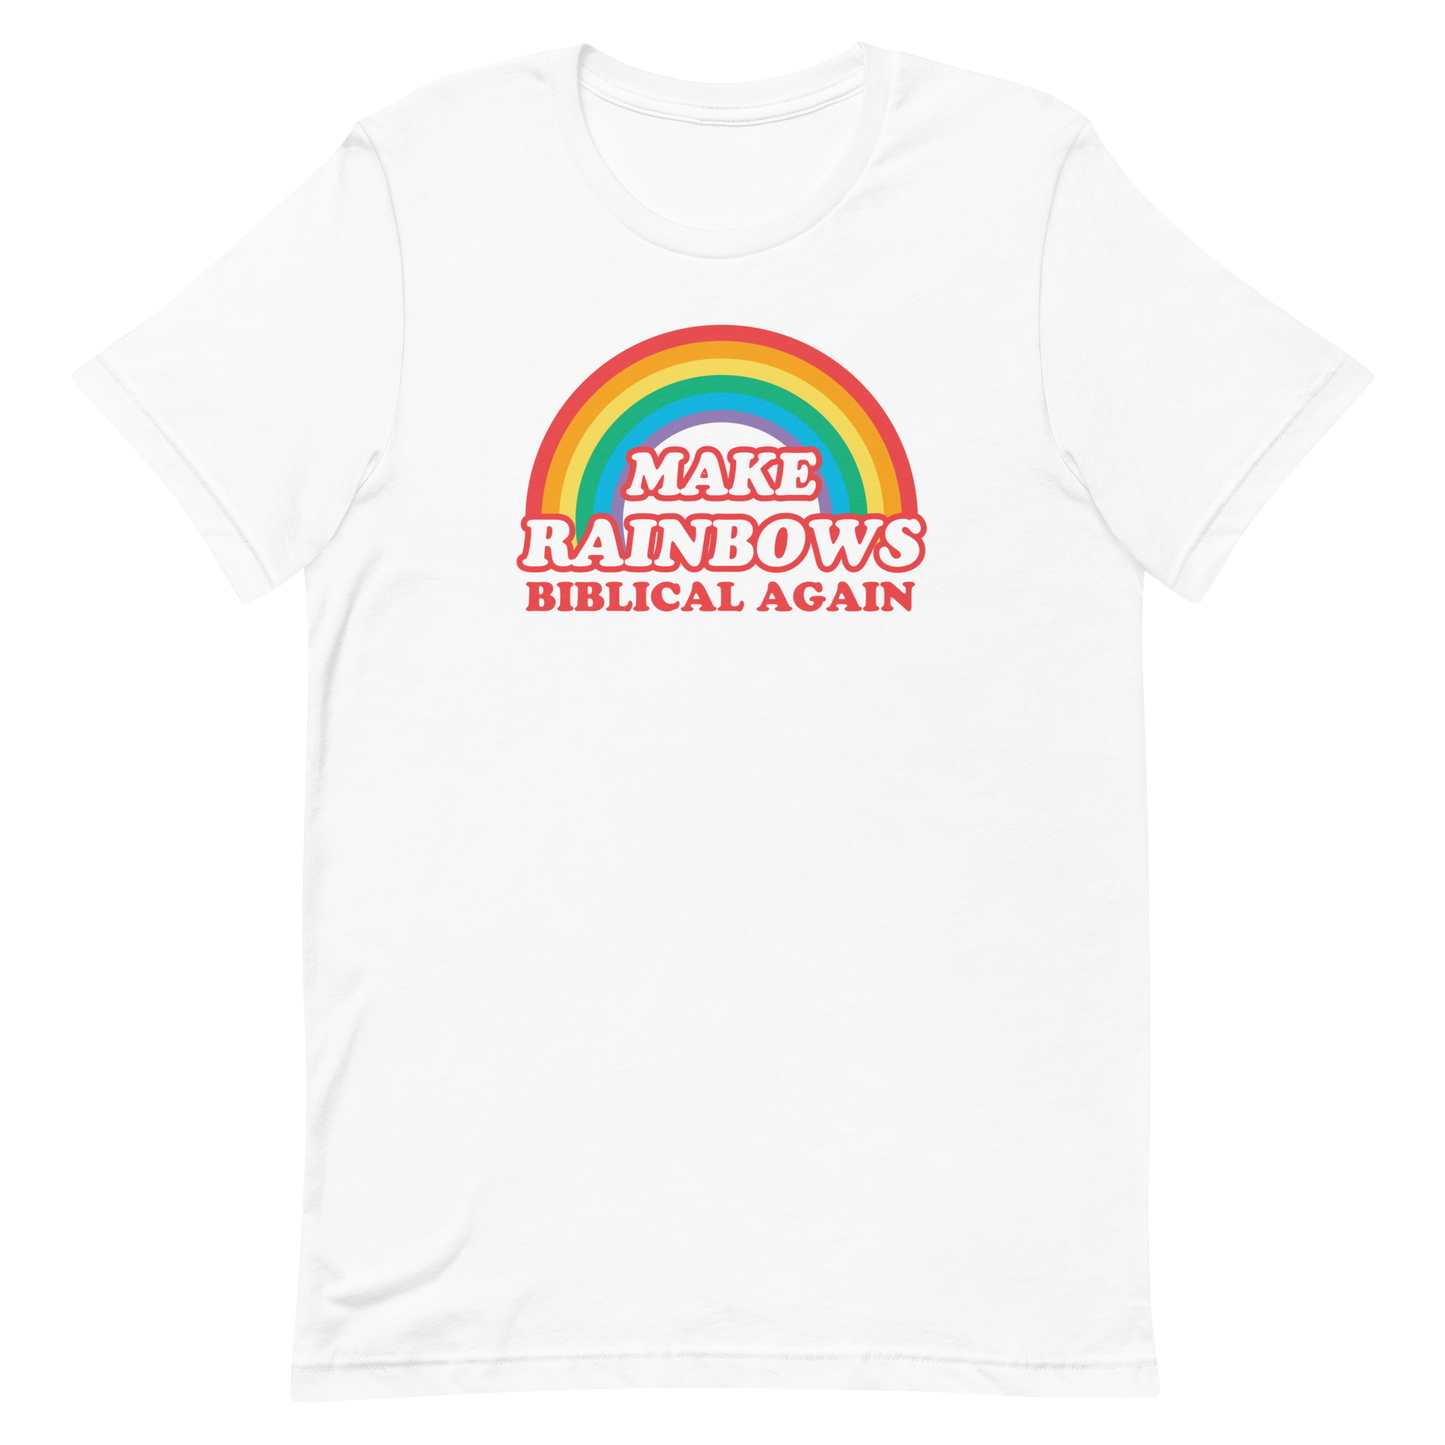 Make Rainbows Biblical Again T-shirt